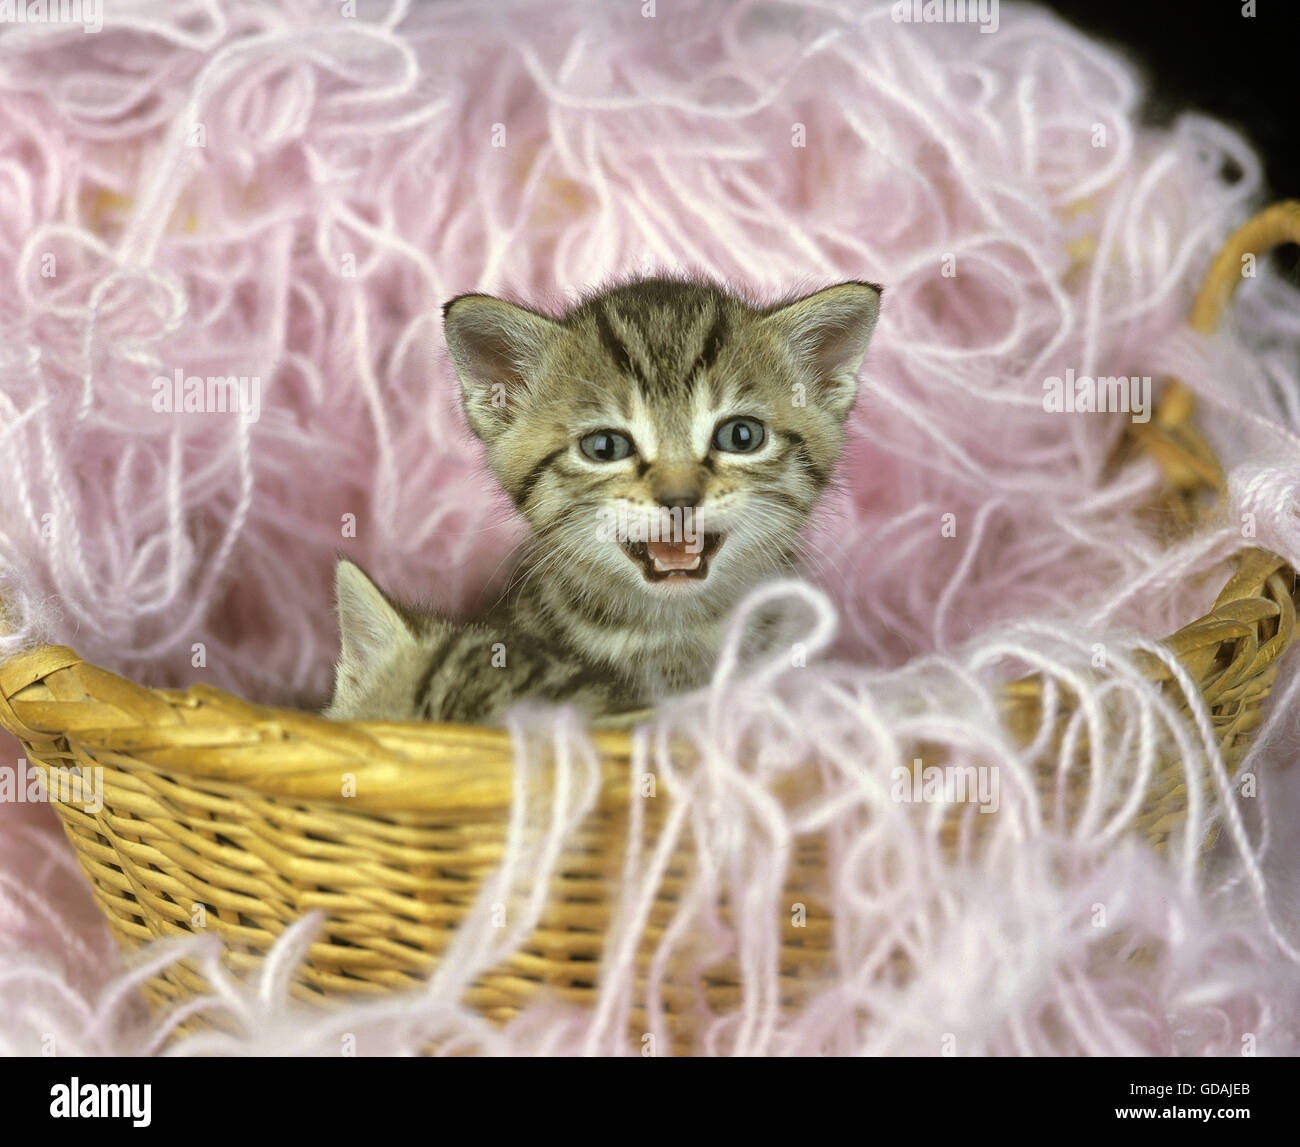 Unione brown tabby gatto domestico, MEOWING gattino nel cestino con lana Foto Stock